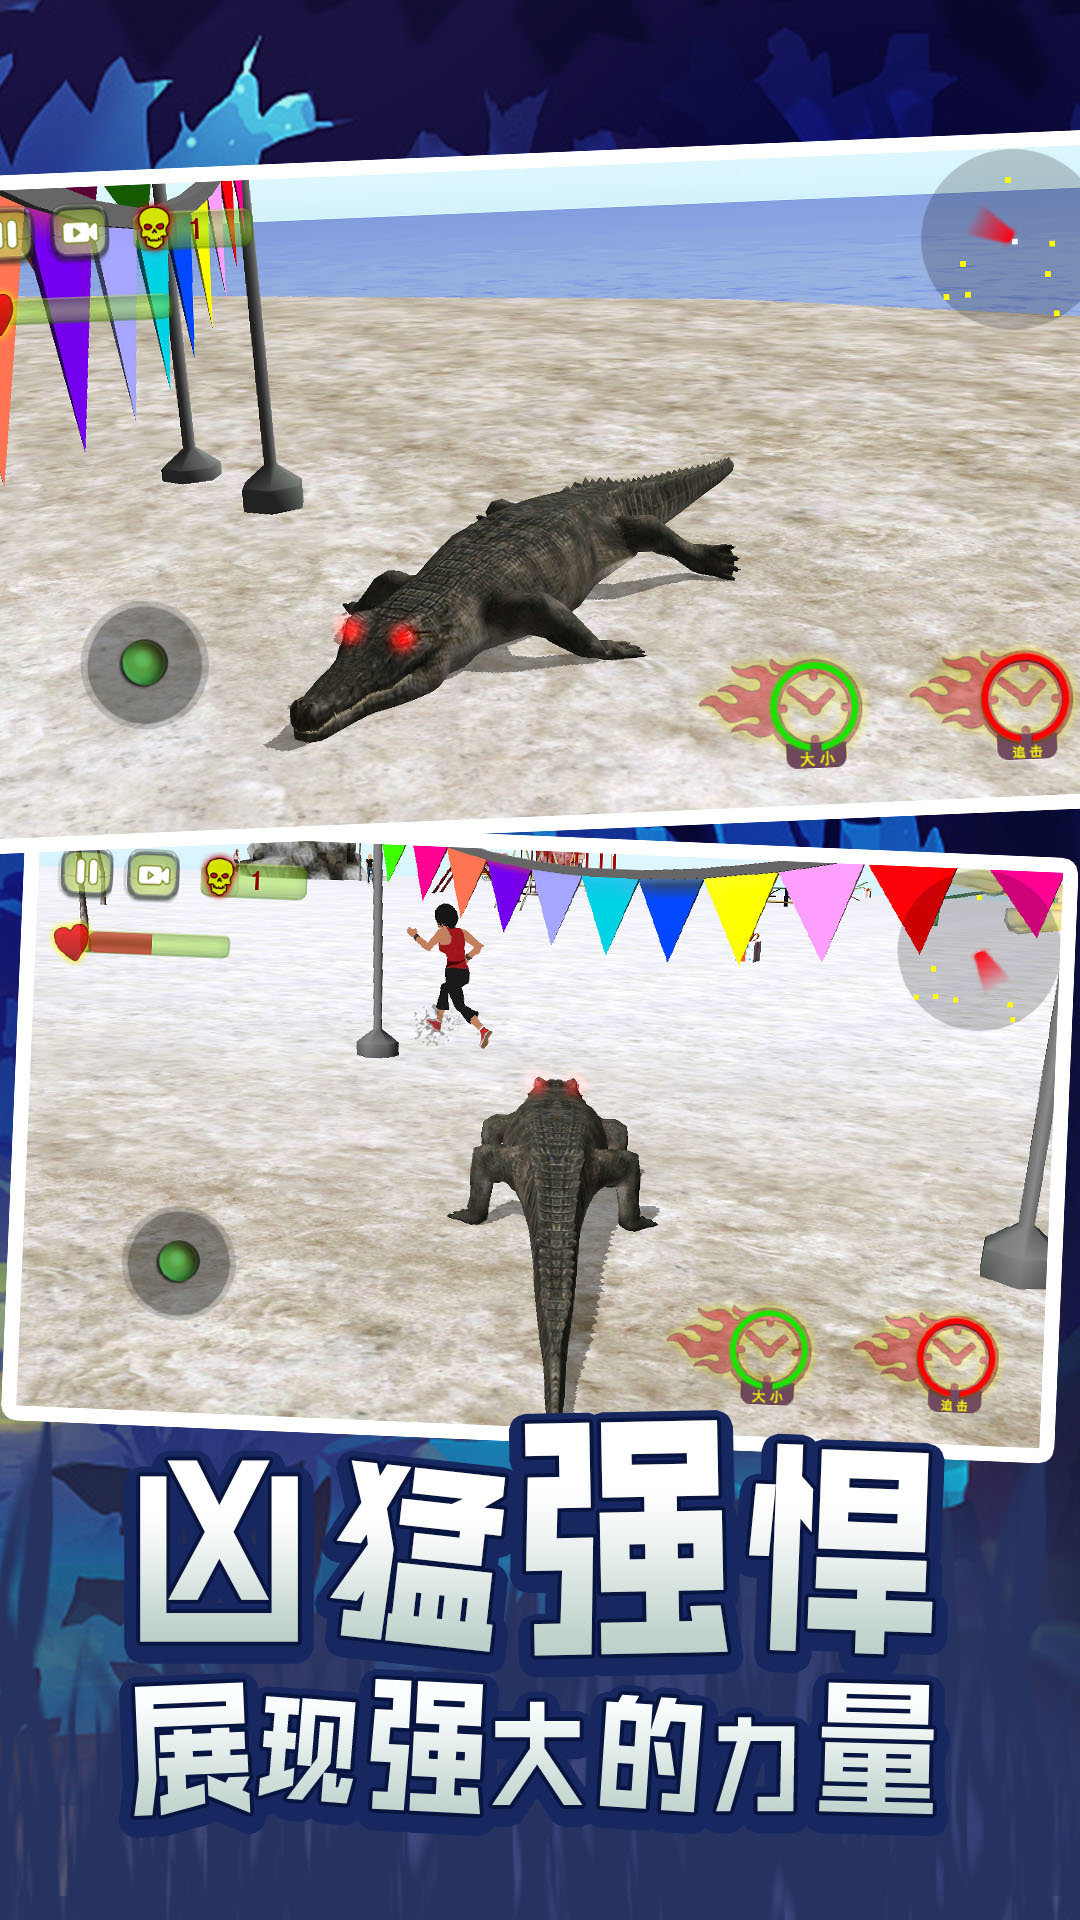 鳄鱼游戏在线_鳄鱼游戏手机游戏_鳄鱼游戏手游